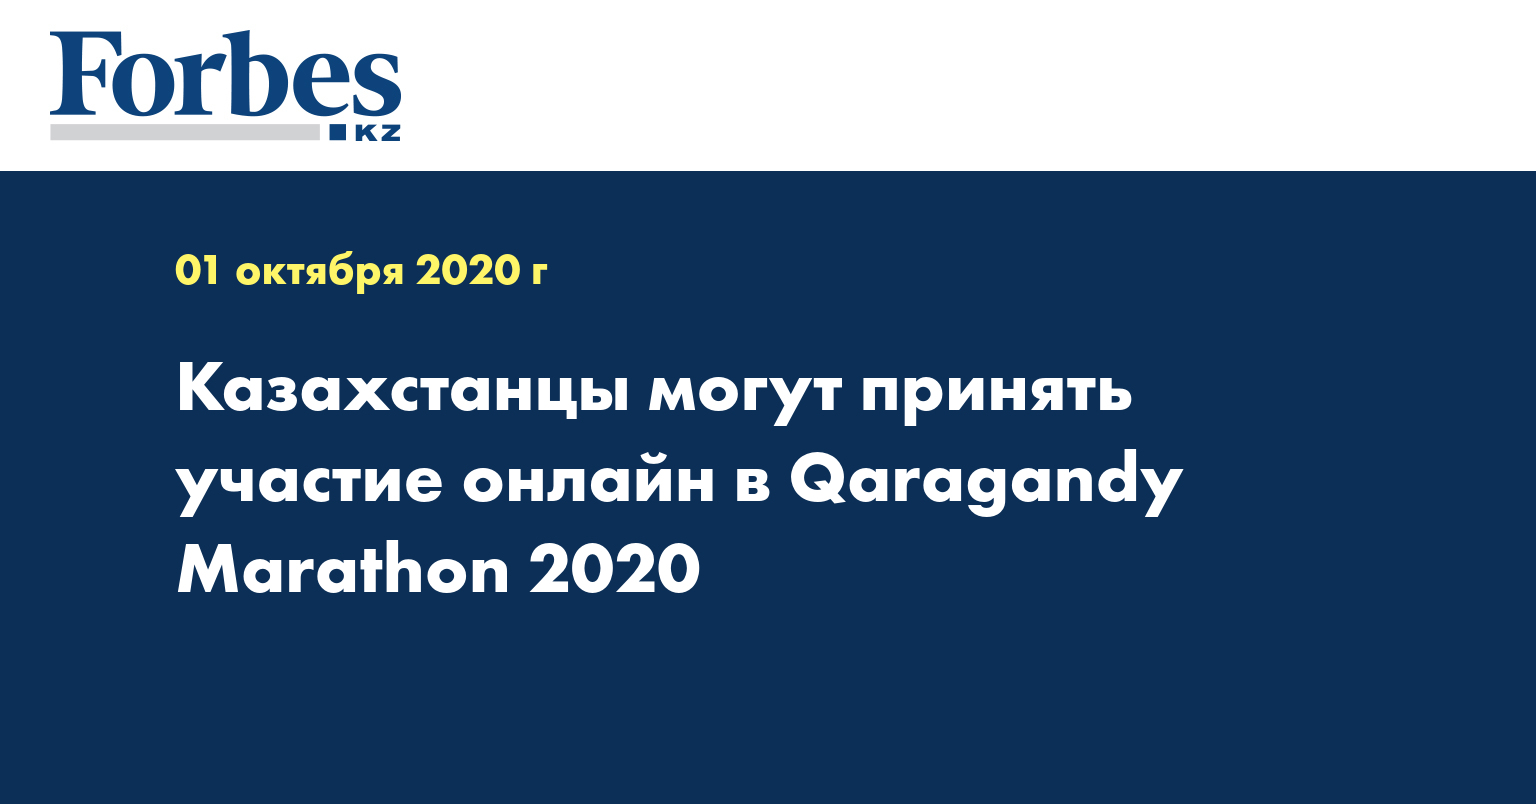 Казахстанцы могут принять участие онлайн в Qaragandy Marathon 2020